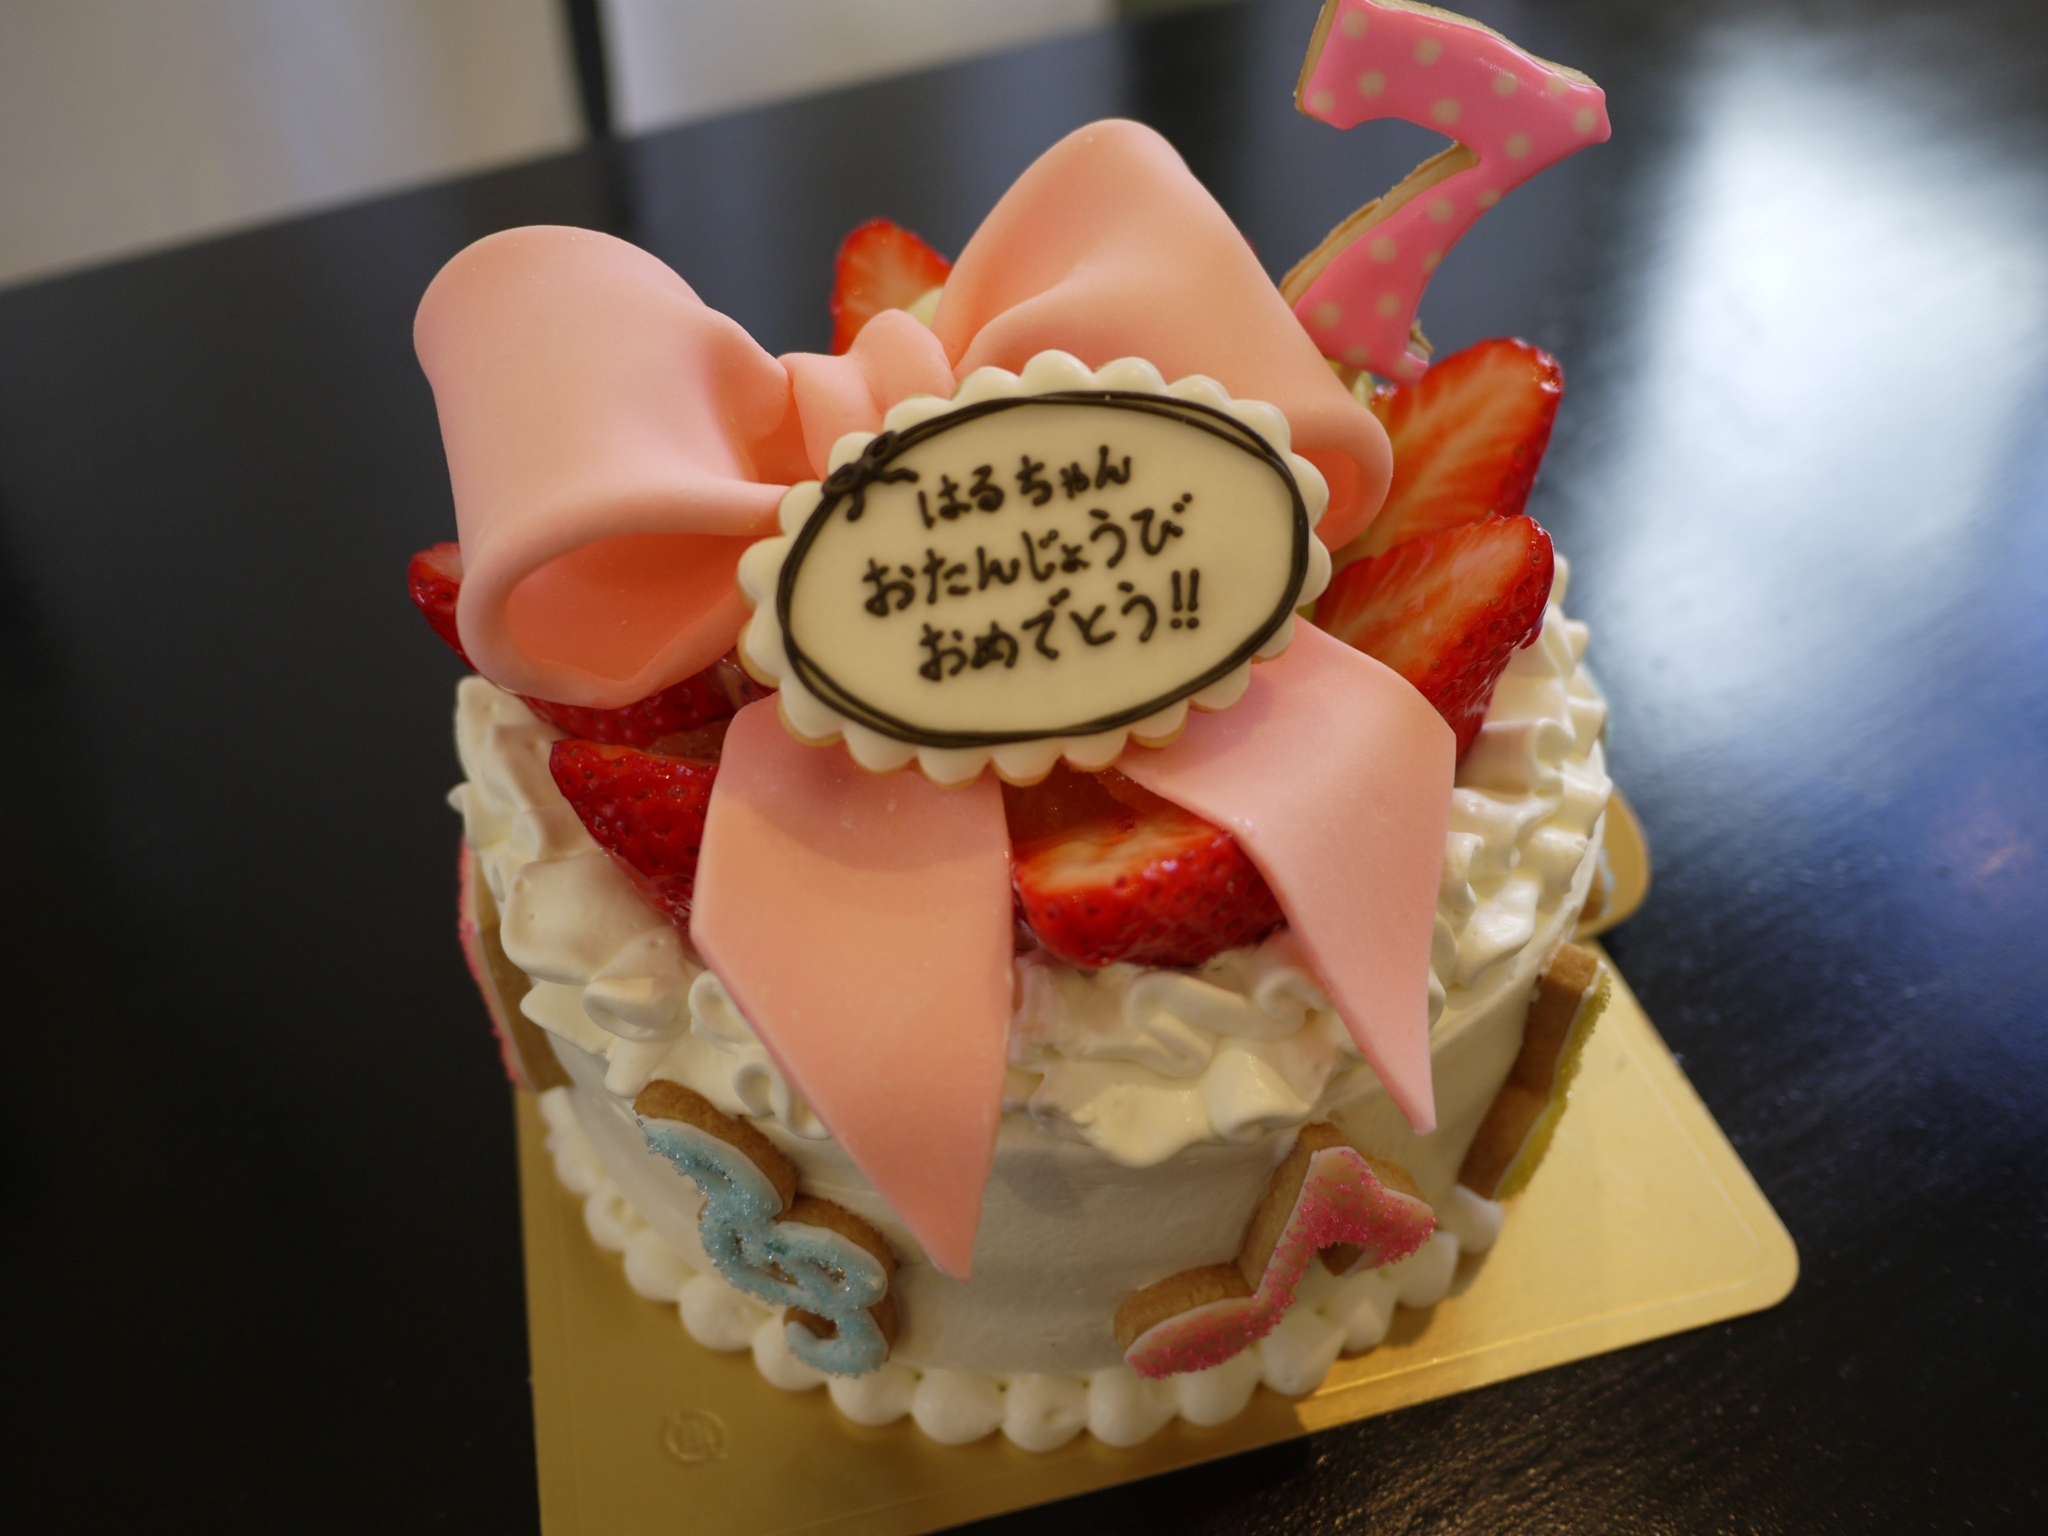 滋賀で思い出深いバースデーケーキをお願いするなら このお店 3選 滋賀のママがイベント 育児 遊び 学びを発信 シガマンマ ピースマム